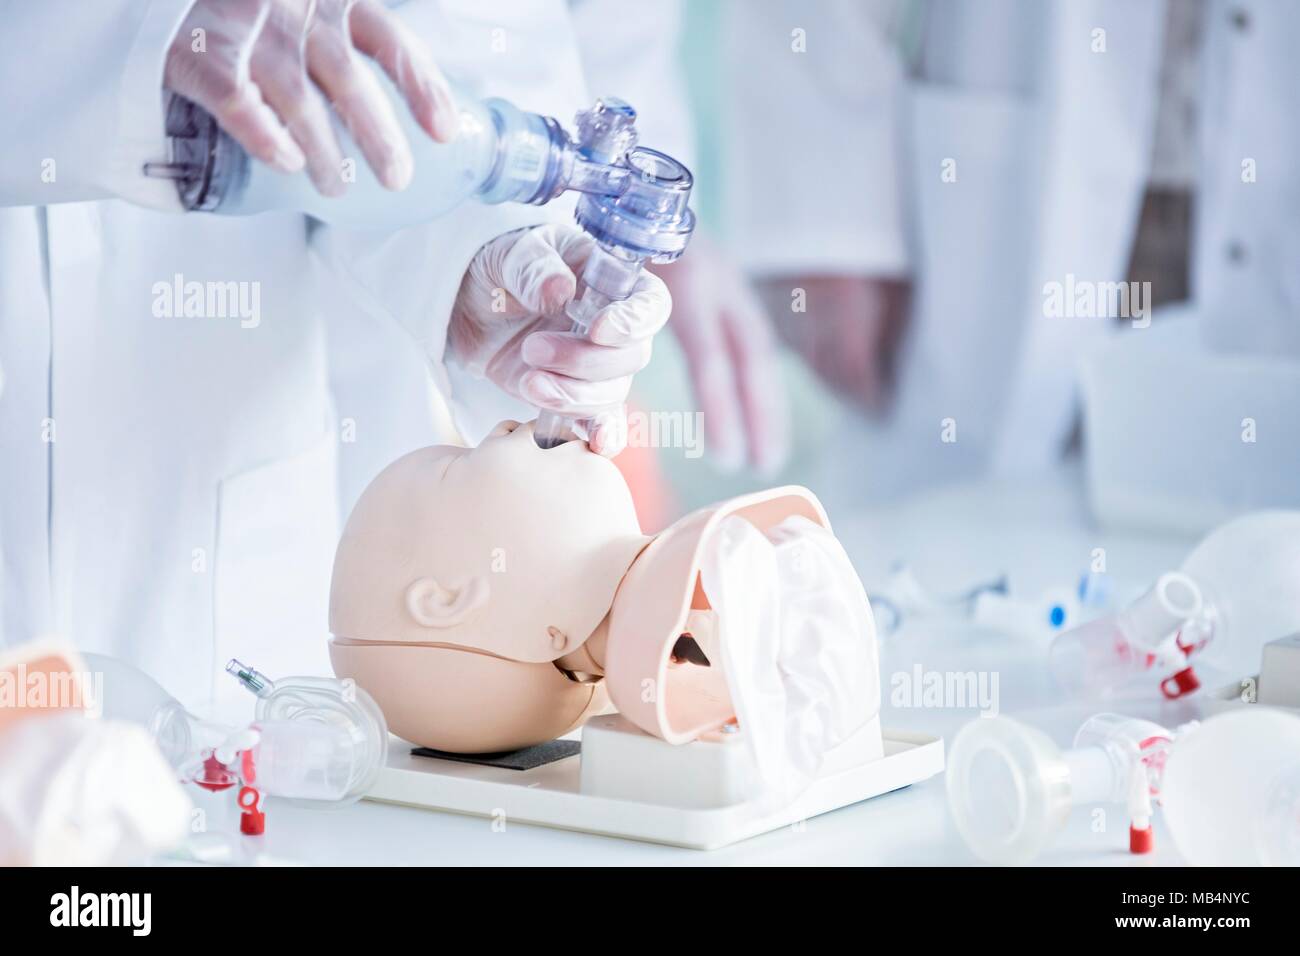 Los médicos que practican la intubación traqueal en un maniquí de formación infantil. Foto de stock